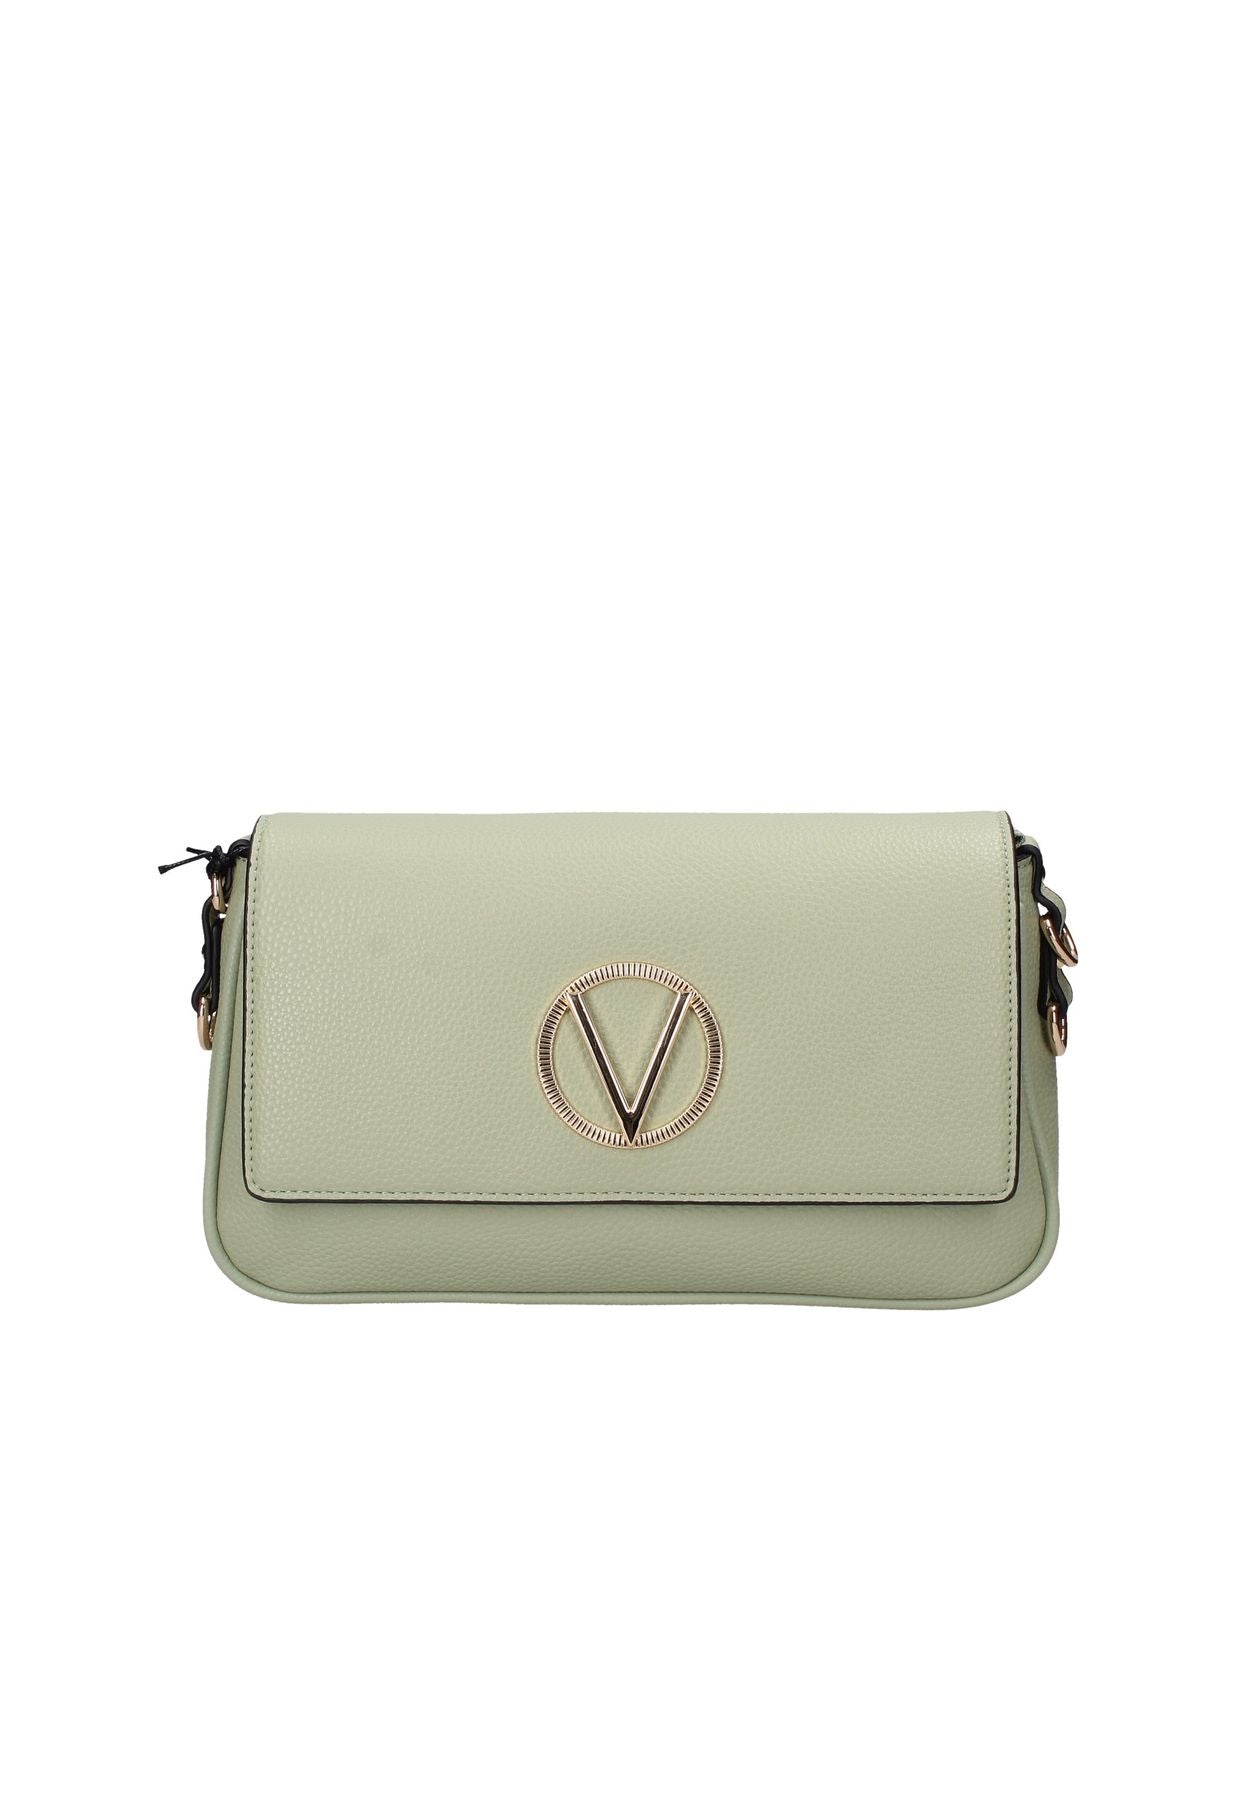 VBS7QS03 VALENTINO BAGS shoulder bag